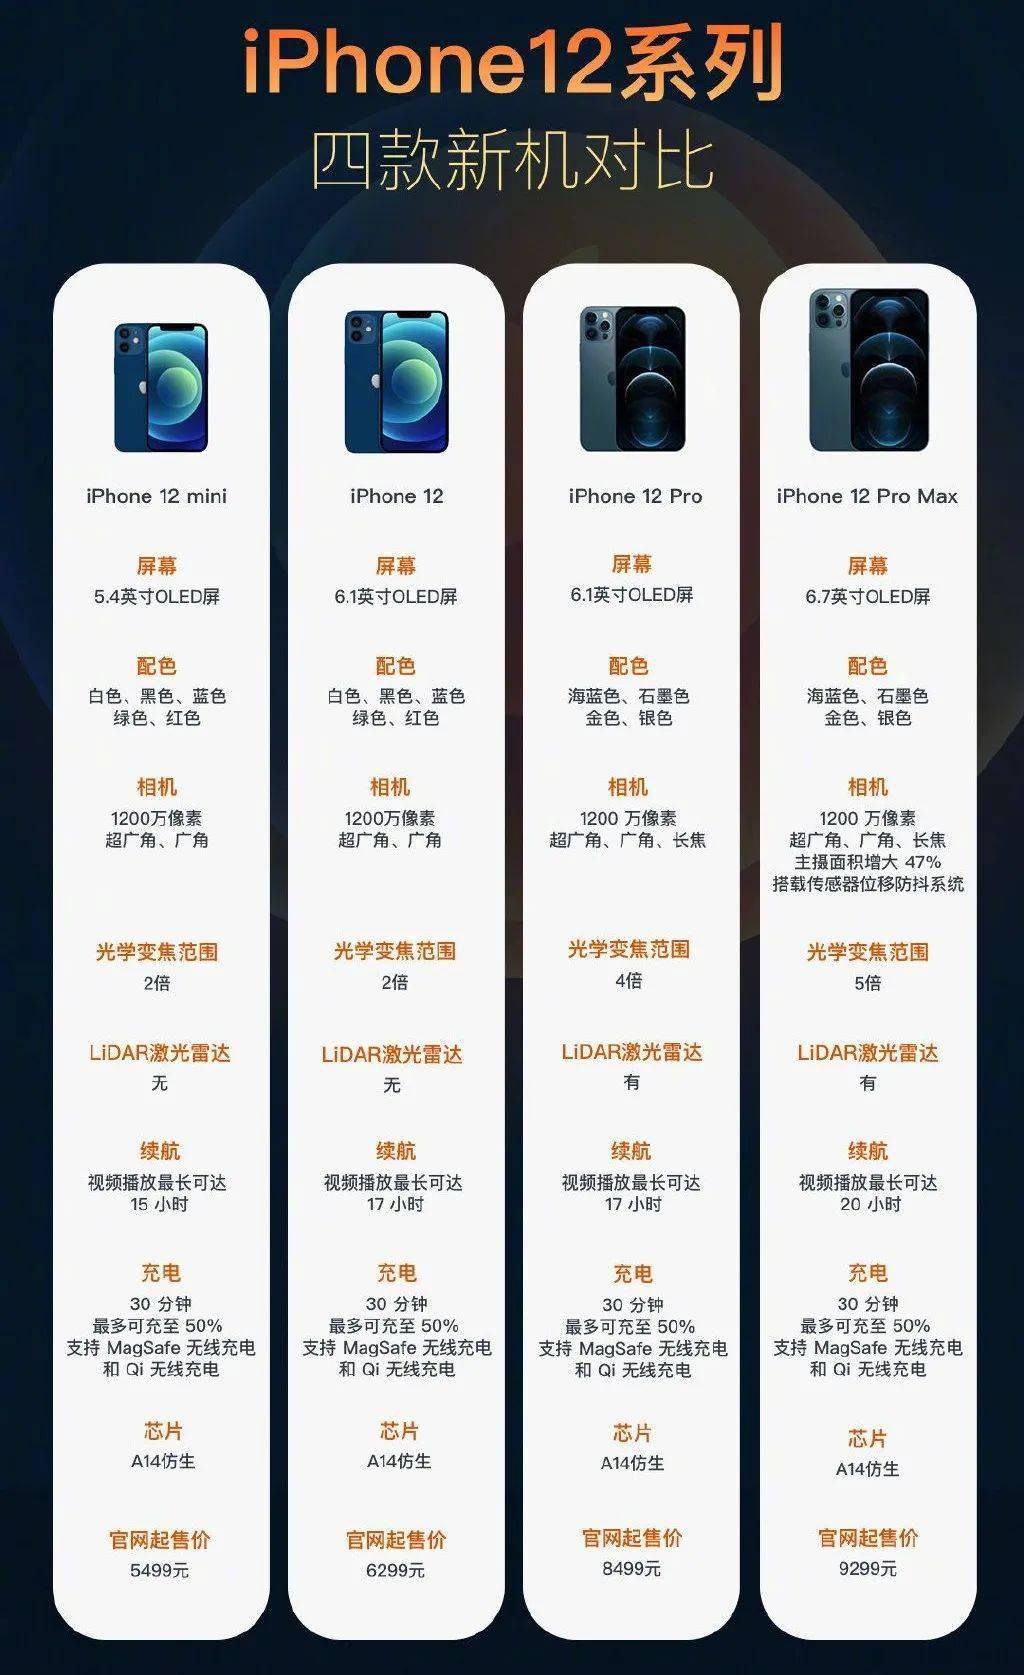 iphone12系列的起售价为5499元,那些说iphone12售价低于5000的营销号